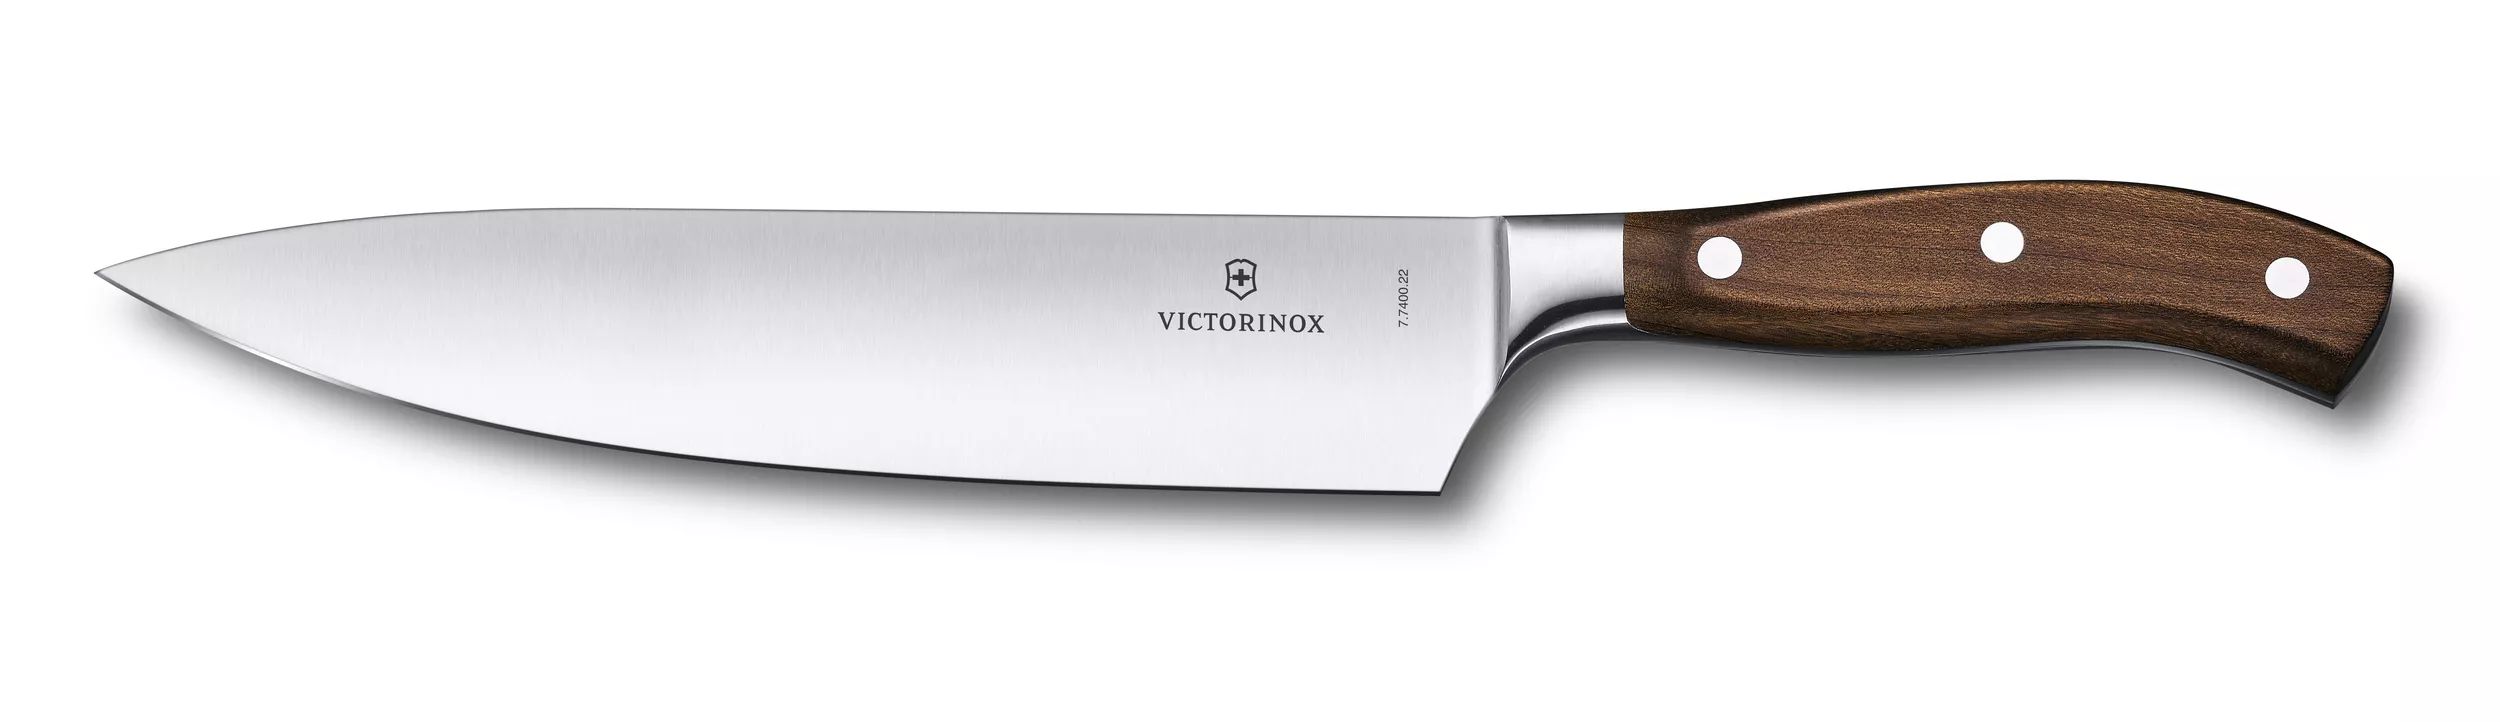 Afila de forma rápida, fácil y segura cada cuchillo recto de tu cocina  gracias a nuestro afilador, diseñado para lograr la manipulación más segura  y, By Victorinox